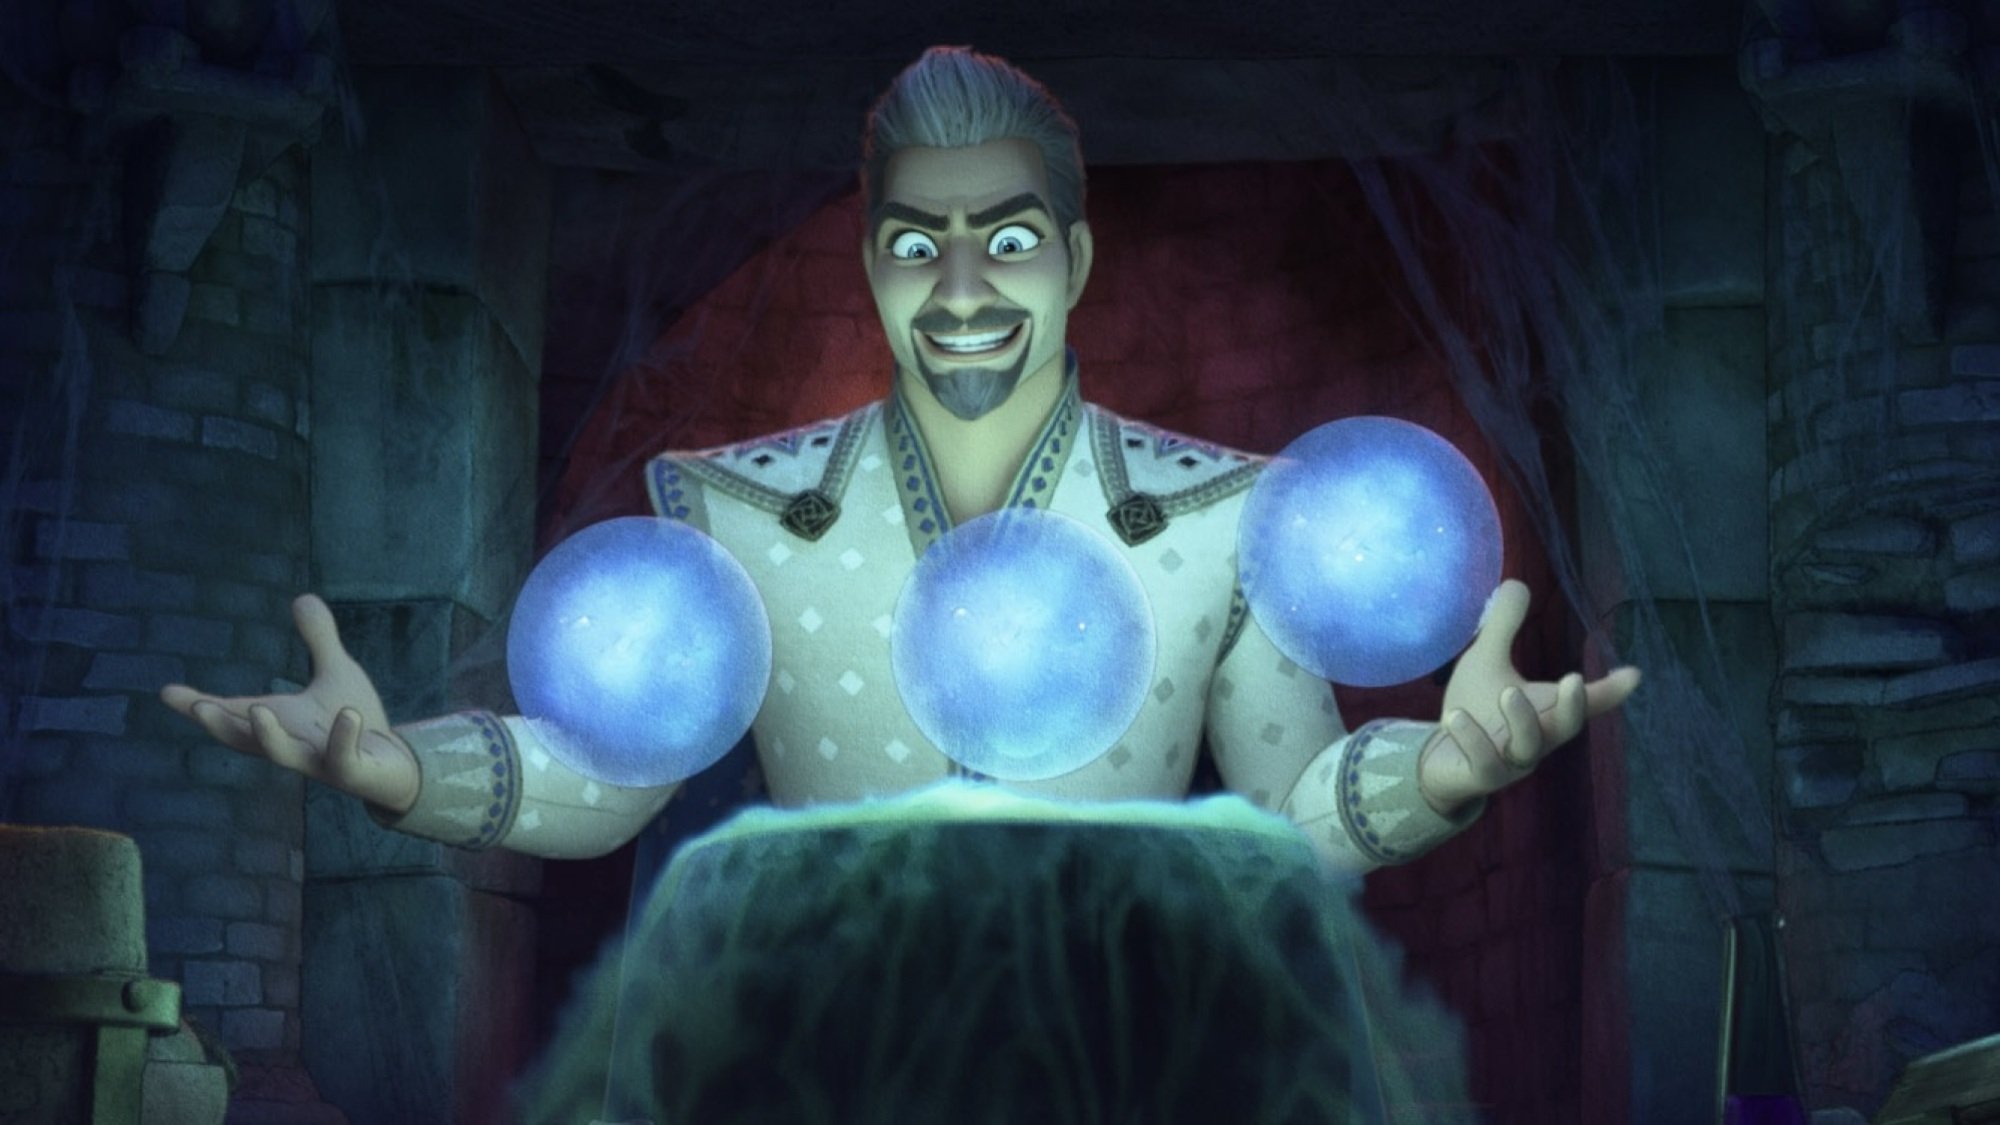 Un homme aux cheveux argentés et à la cape blanche tient trois bulles lumineuses avec un sourire menaçant sur le visage.